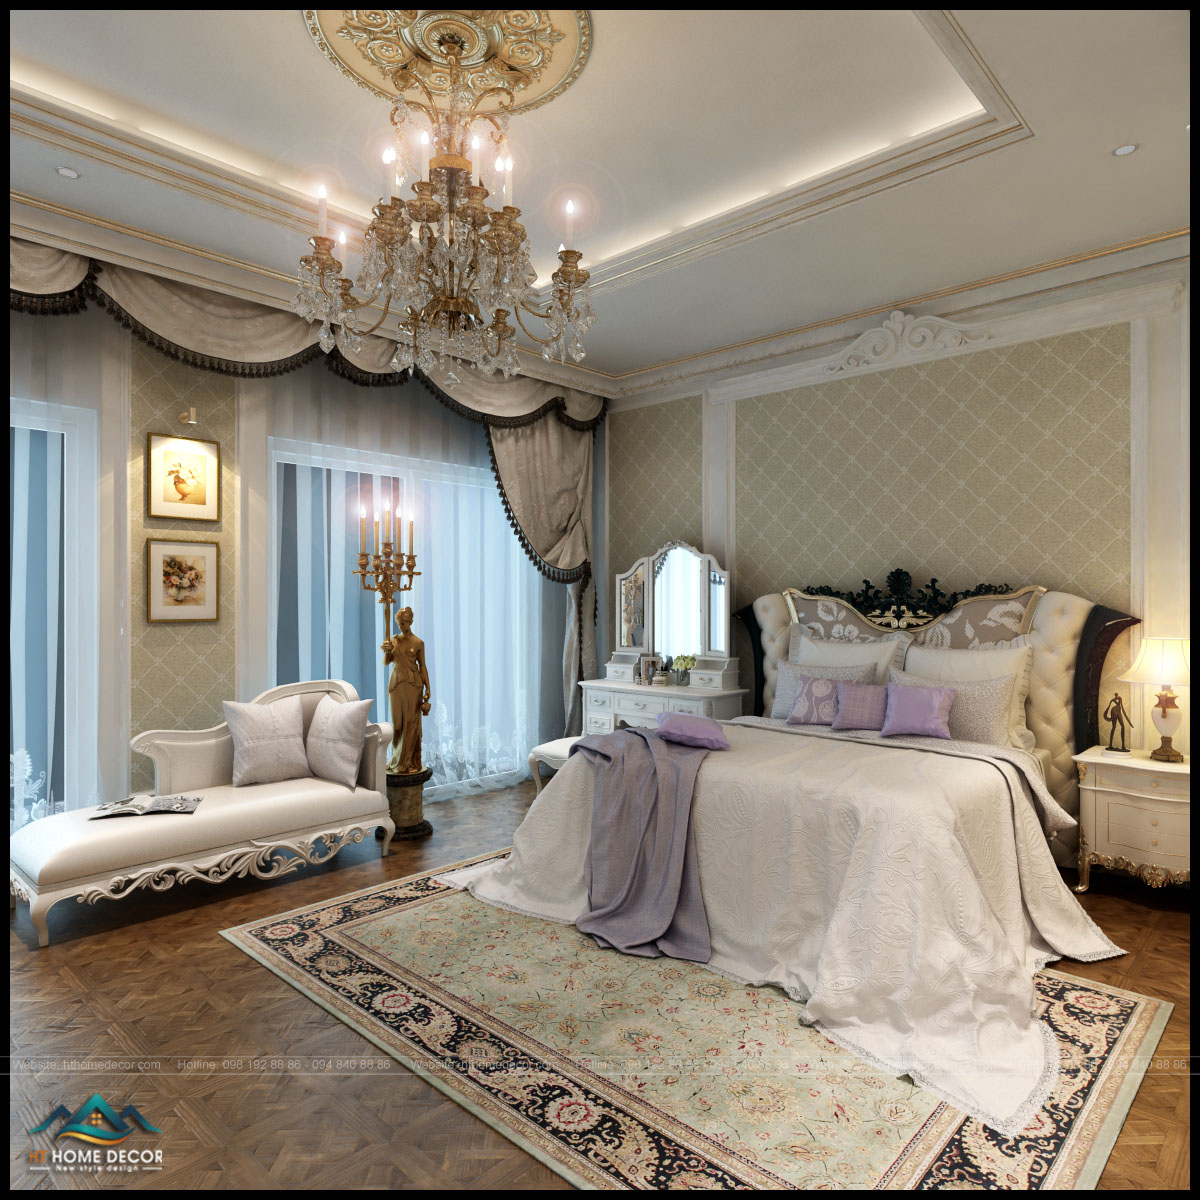 Được phối thêm màu trắng cùng màu chủ đạo của căn hộ, làm cho gian phòng sáng hơn, đem đến vẻ đẹp hiện đại cho gia chủ.